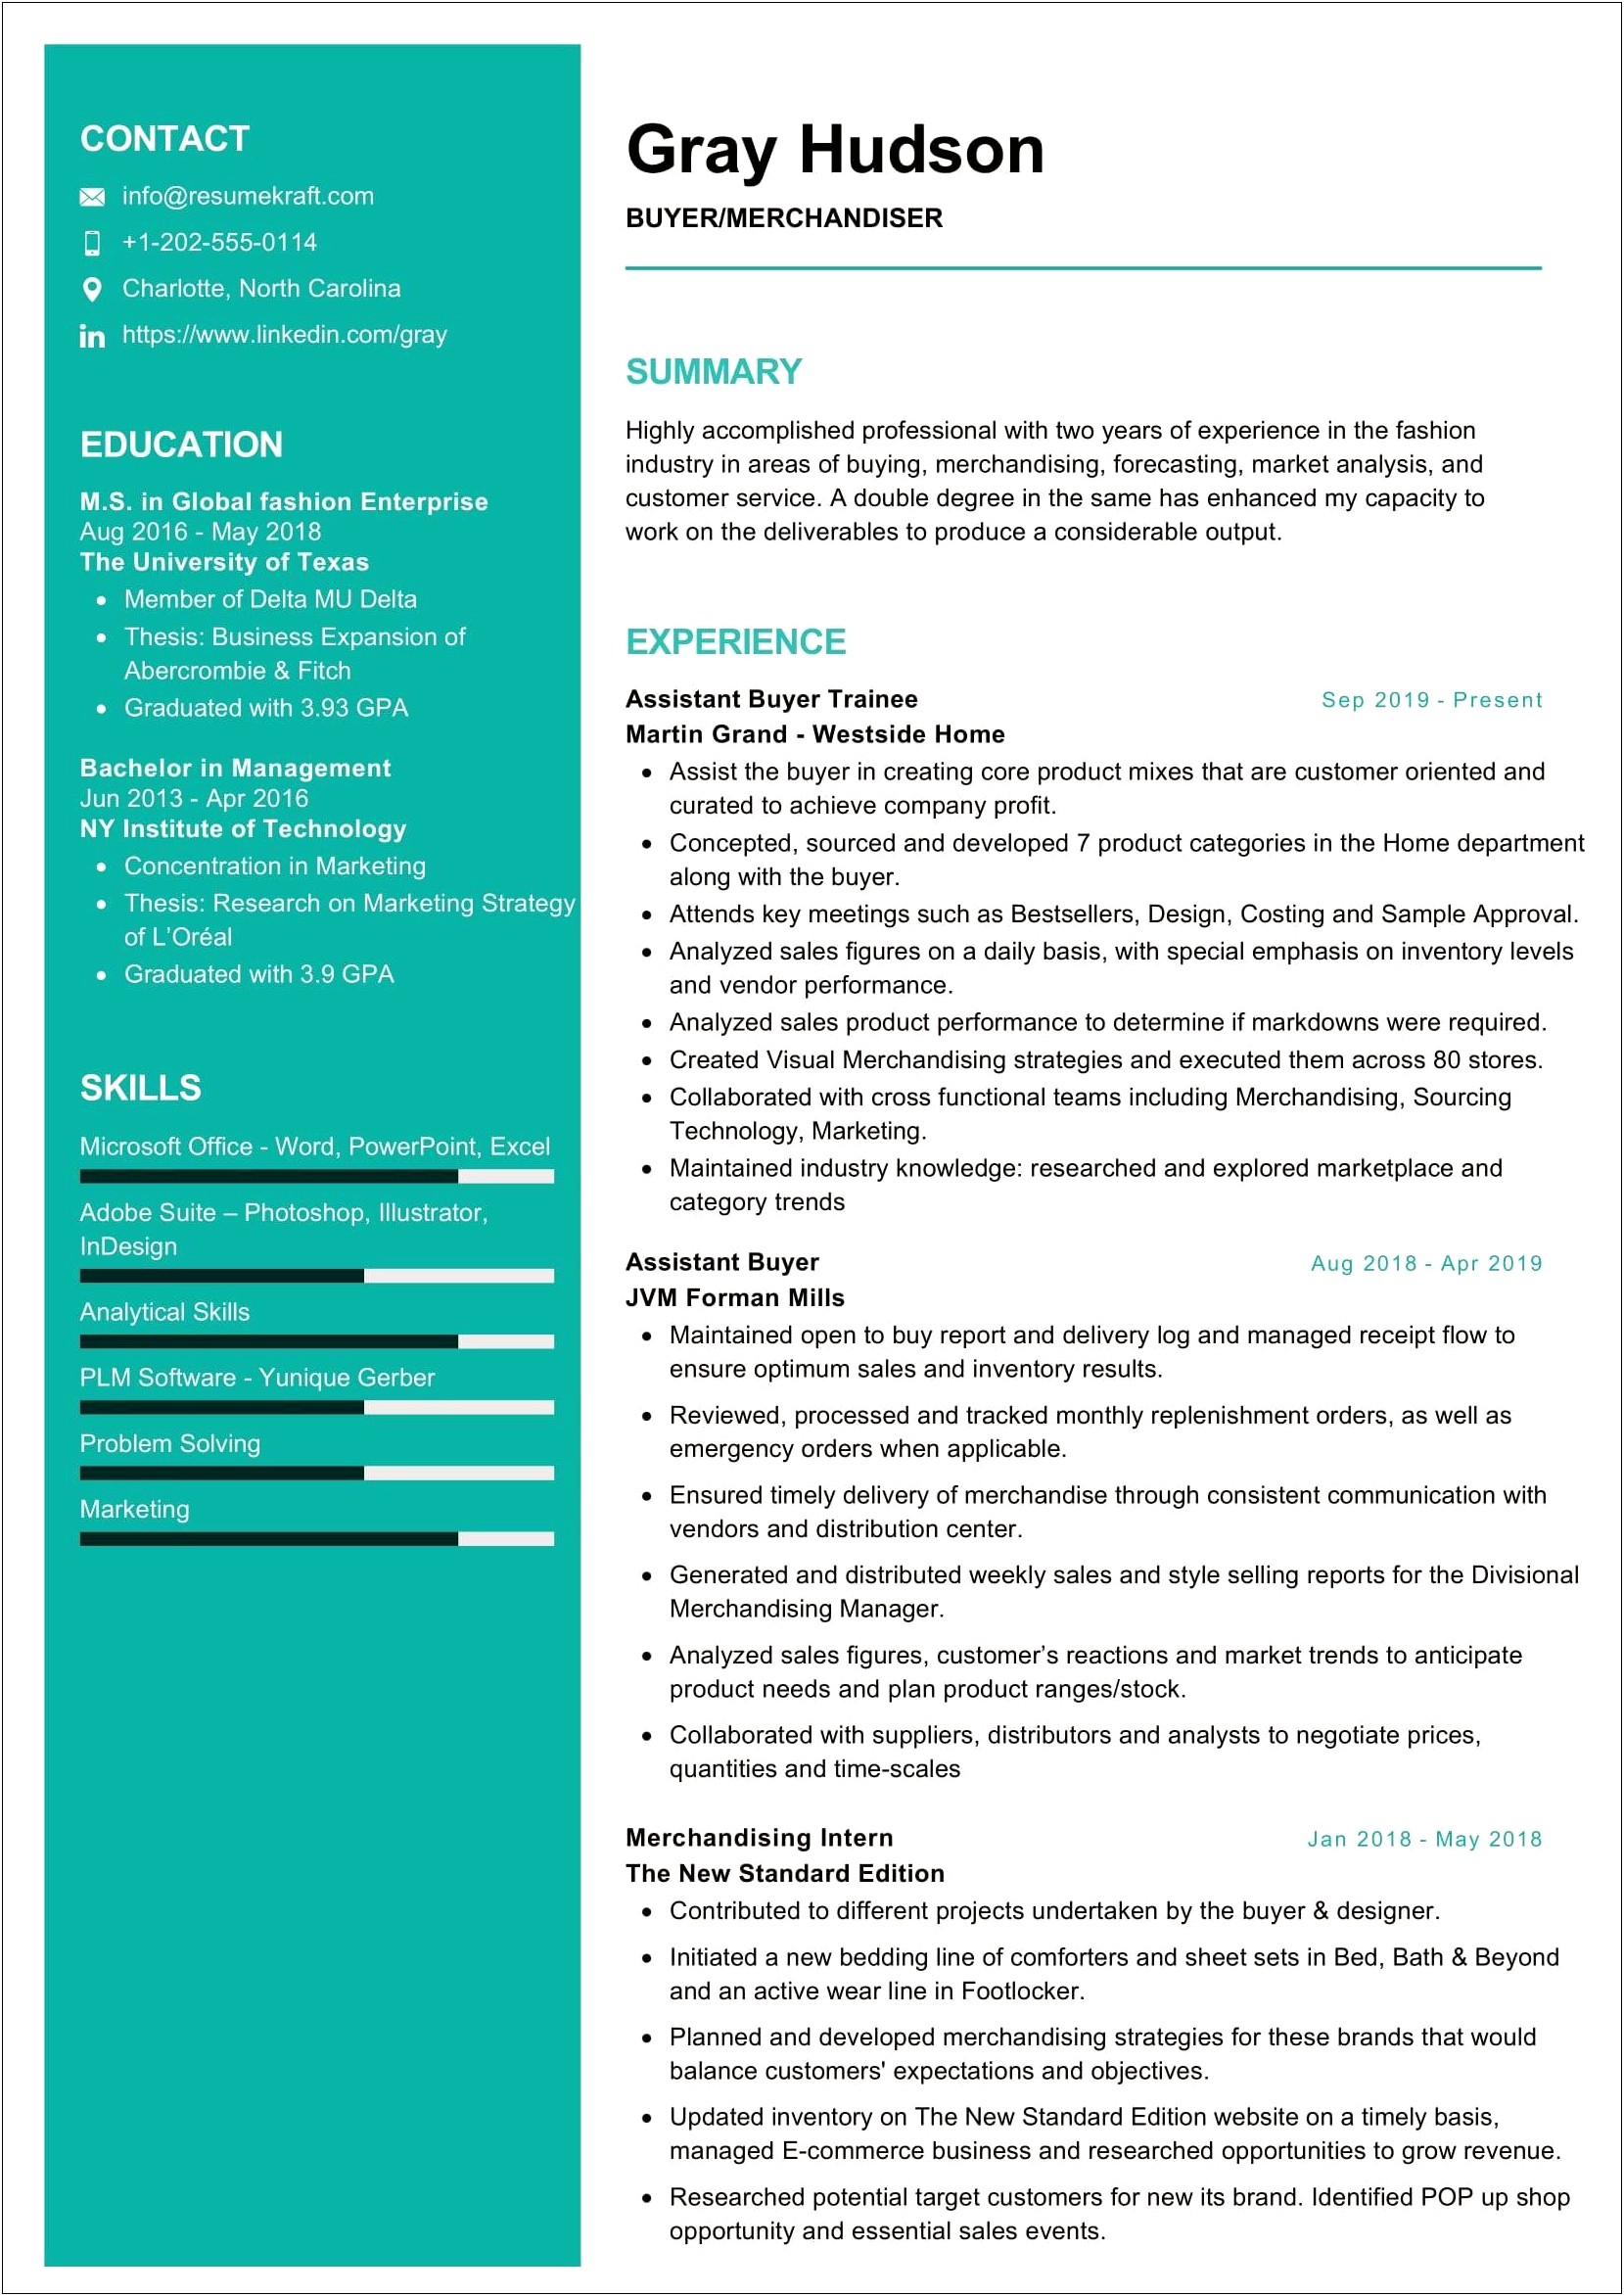 Merchandiser Worker Job Description Resume